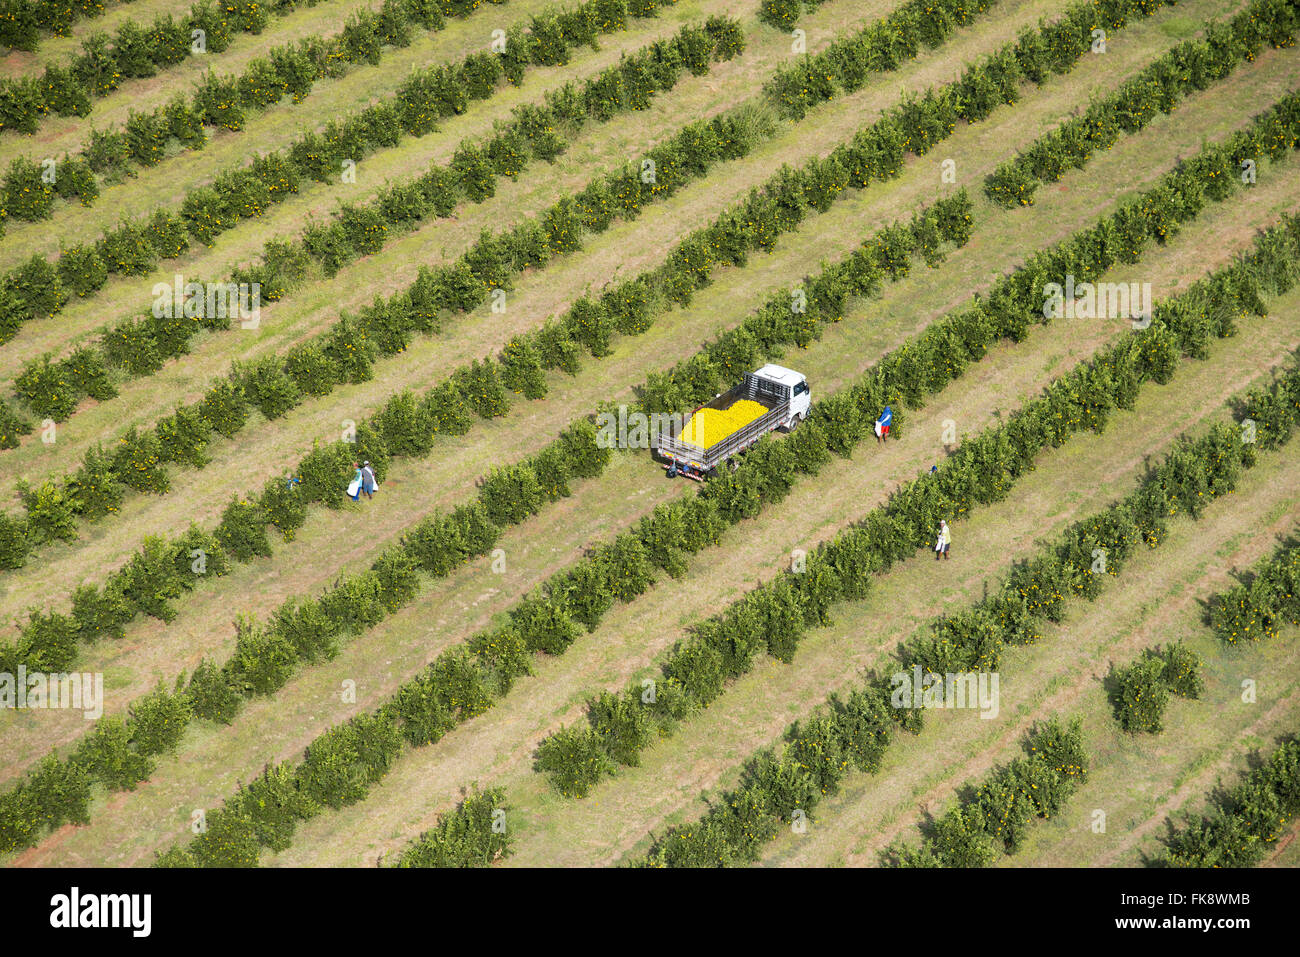 Vue aérienne de la collecte d'oranges dans le verger à la campagne Banque D'Images